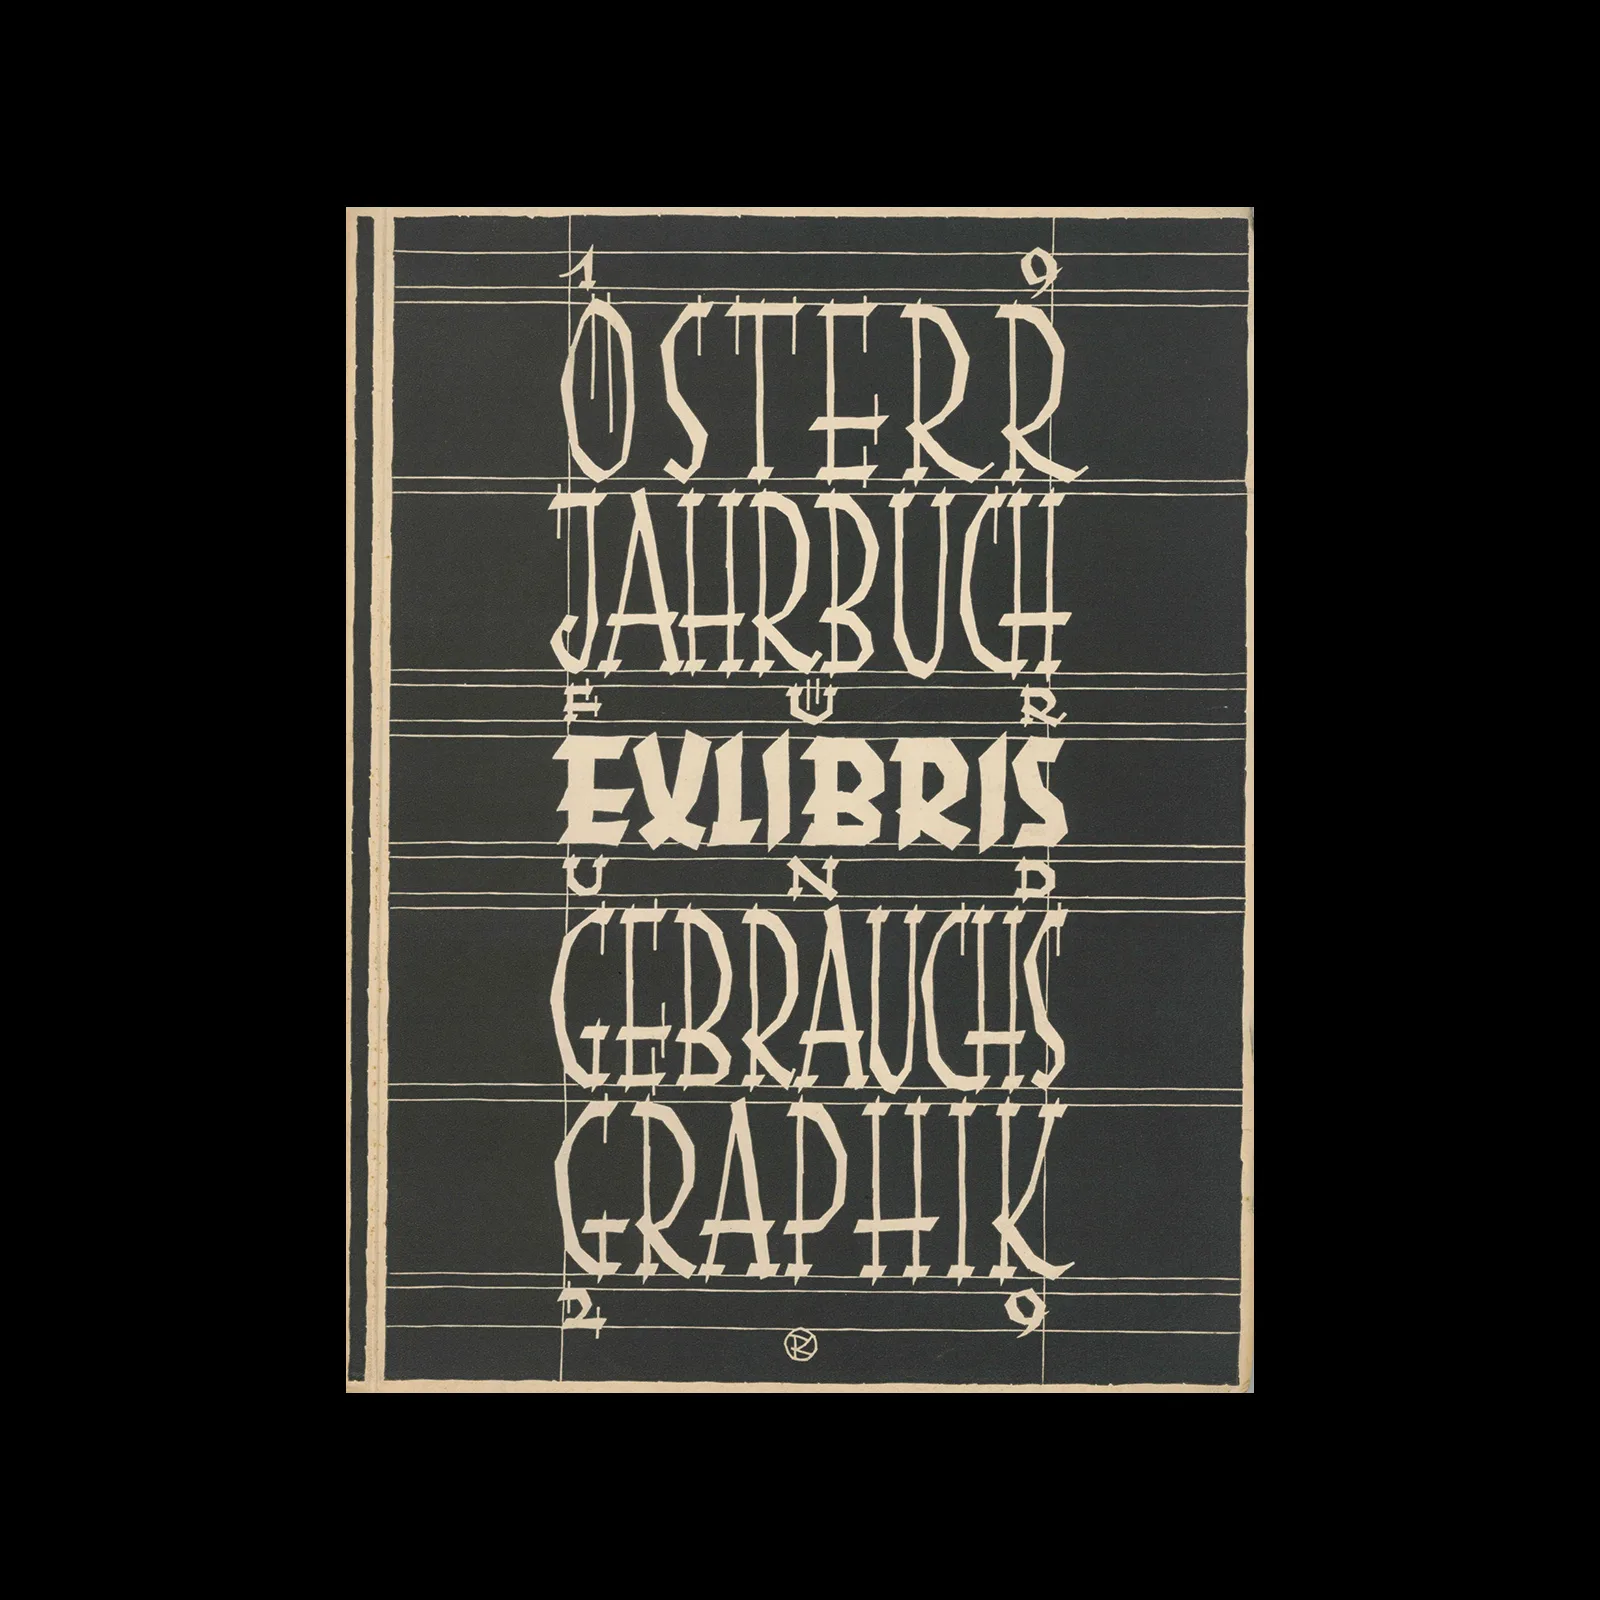 Österreichisches Jahrbuch für Exlibris und Gebrauchsgrafik, 1929